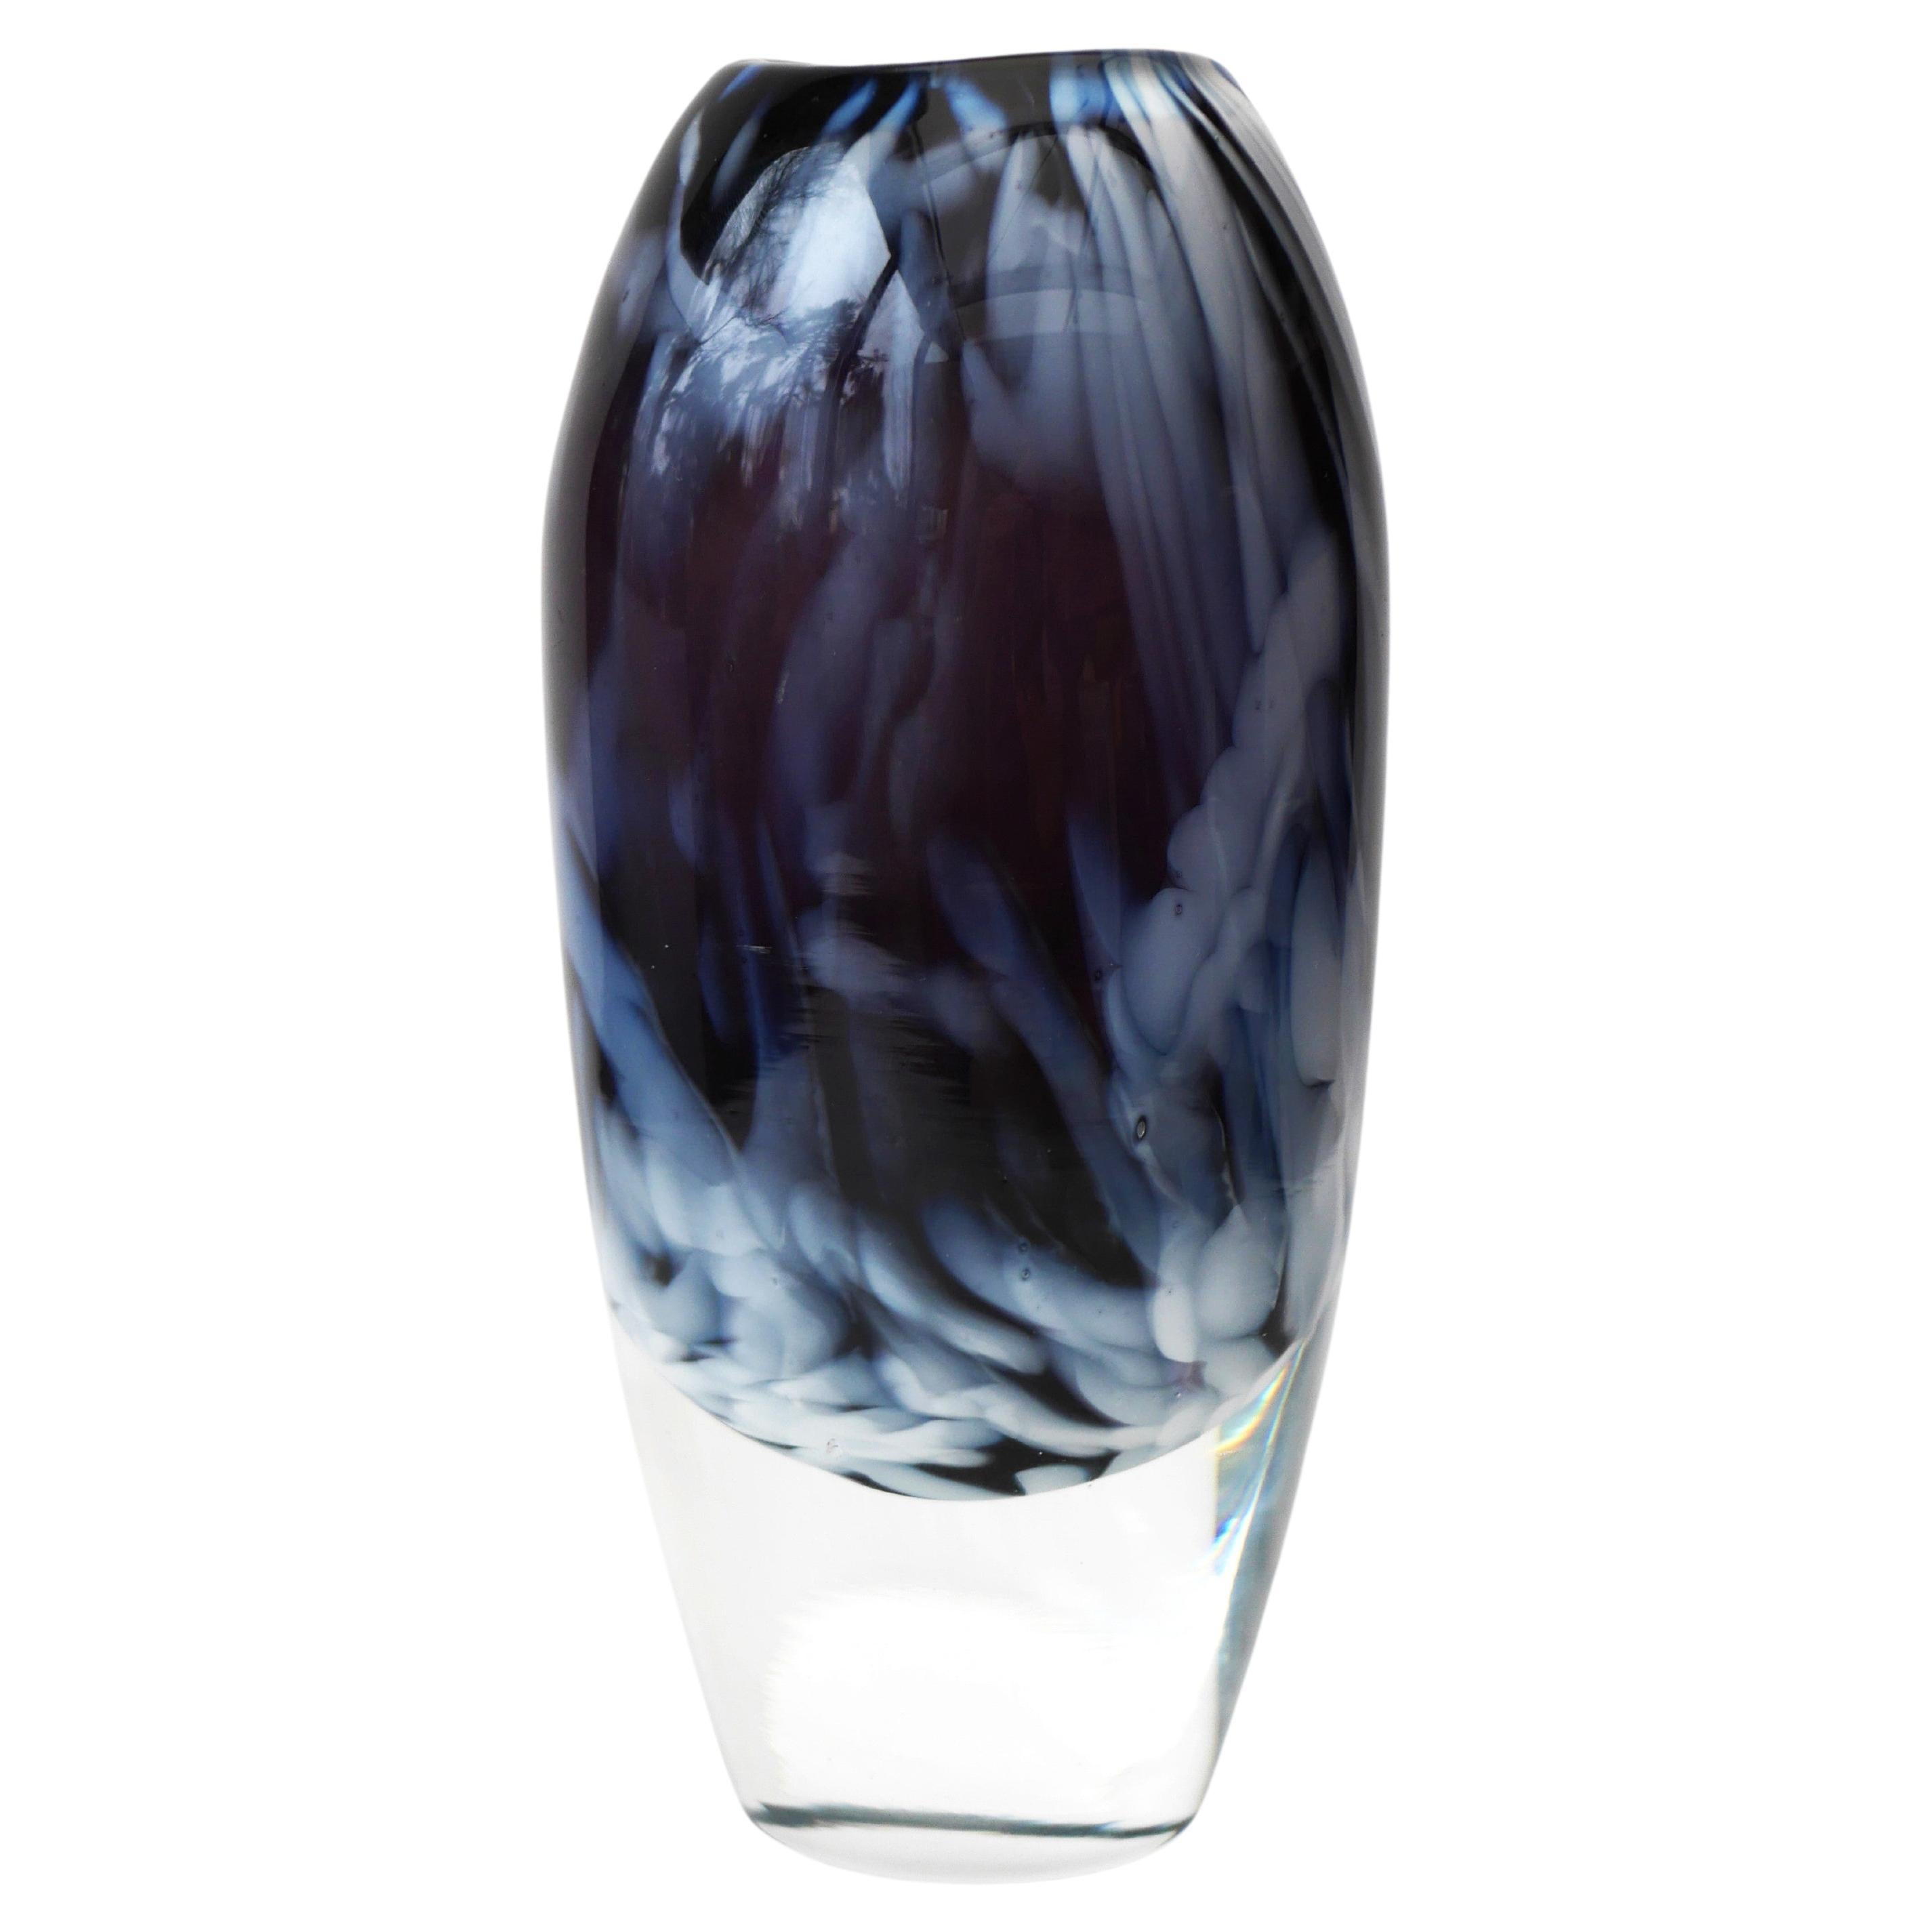 Scandinavian art glass Vase by Kjell Engman, Sea Glassbruk, Sweden